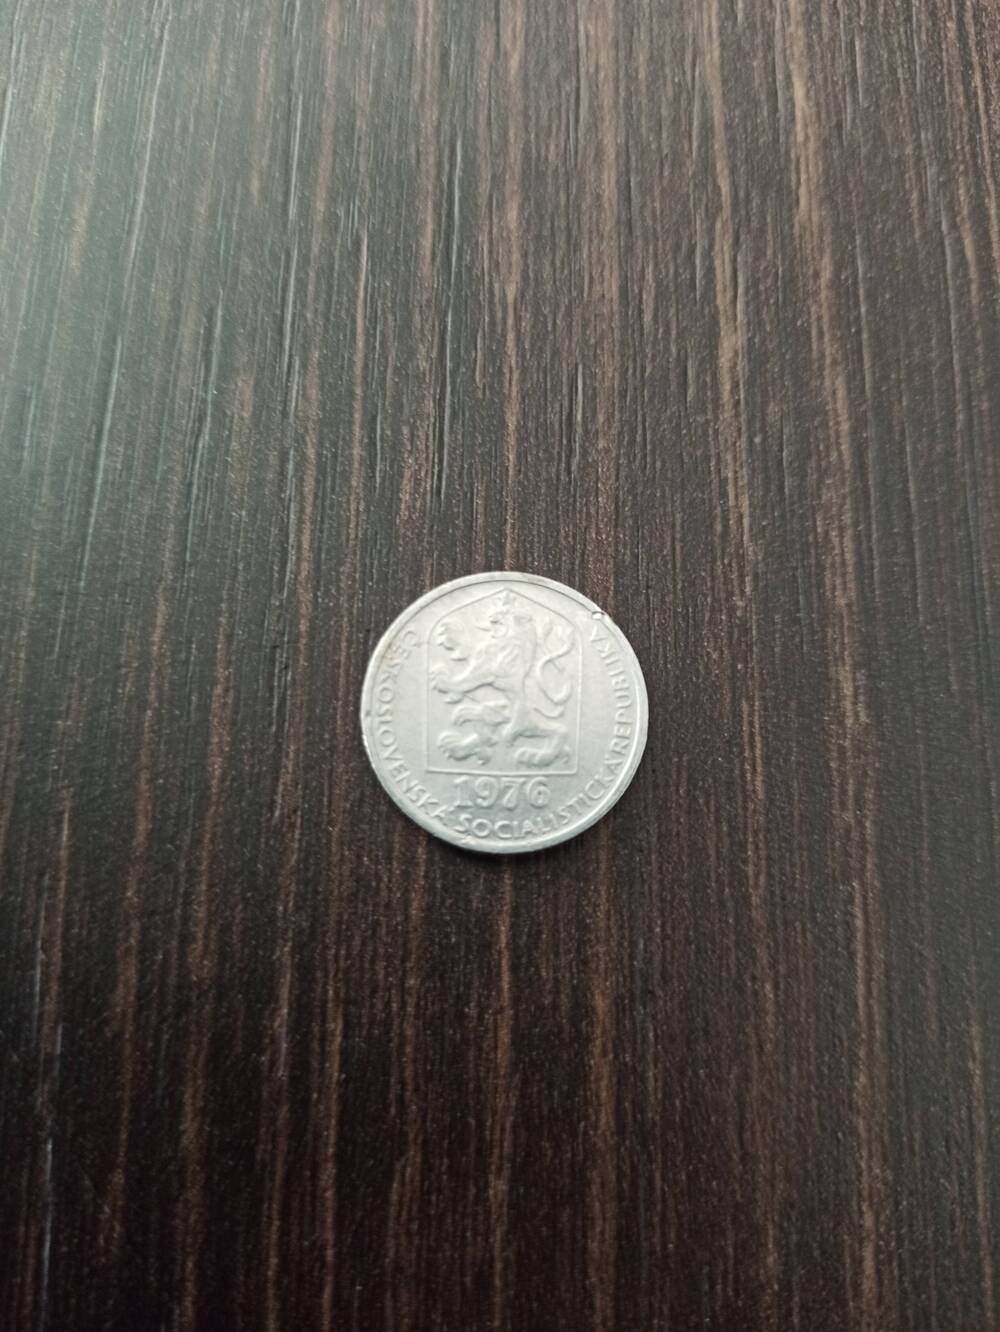 Нумизматика. Монета Чехословакии достоинством 10 h 1974 года. Лицевая сторона - 10 h, гербовая сторона – изображение льва и надпись Чехословацкая республика.